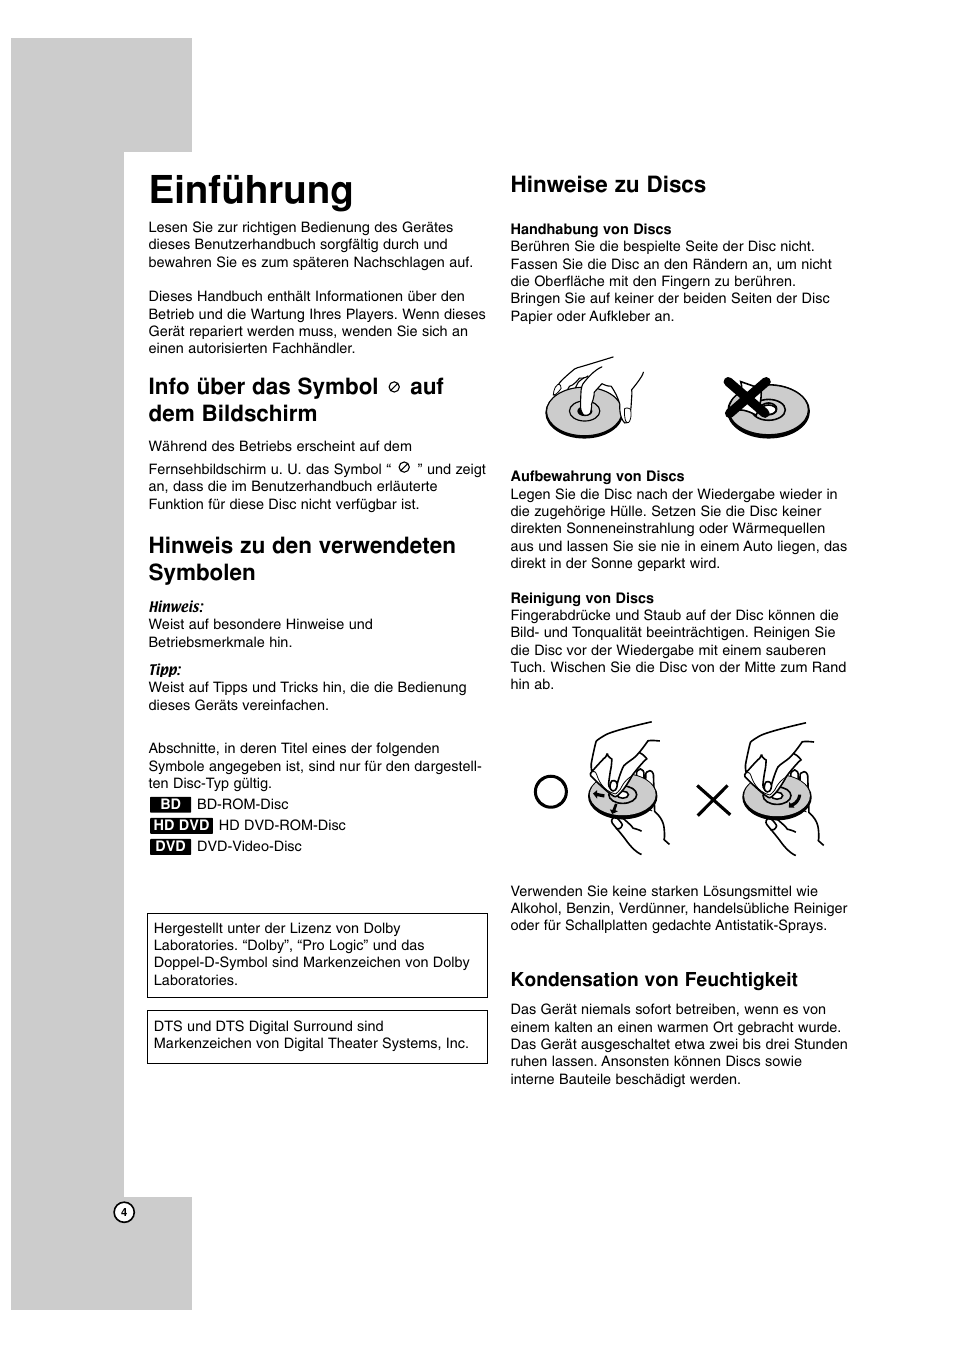 Einführung, Info über das symbol auf dem bildschirm, Hinweis zu den verwendeten symbolen | Hinweise zu discs | LG BH100 Benutzerhandbuch | Seite 4 / 30